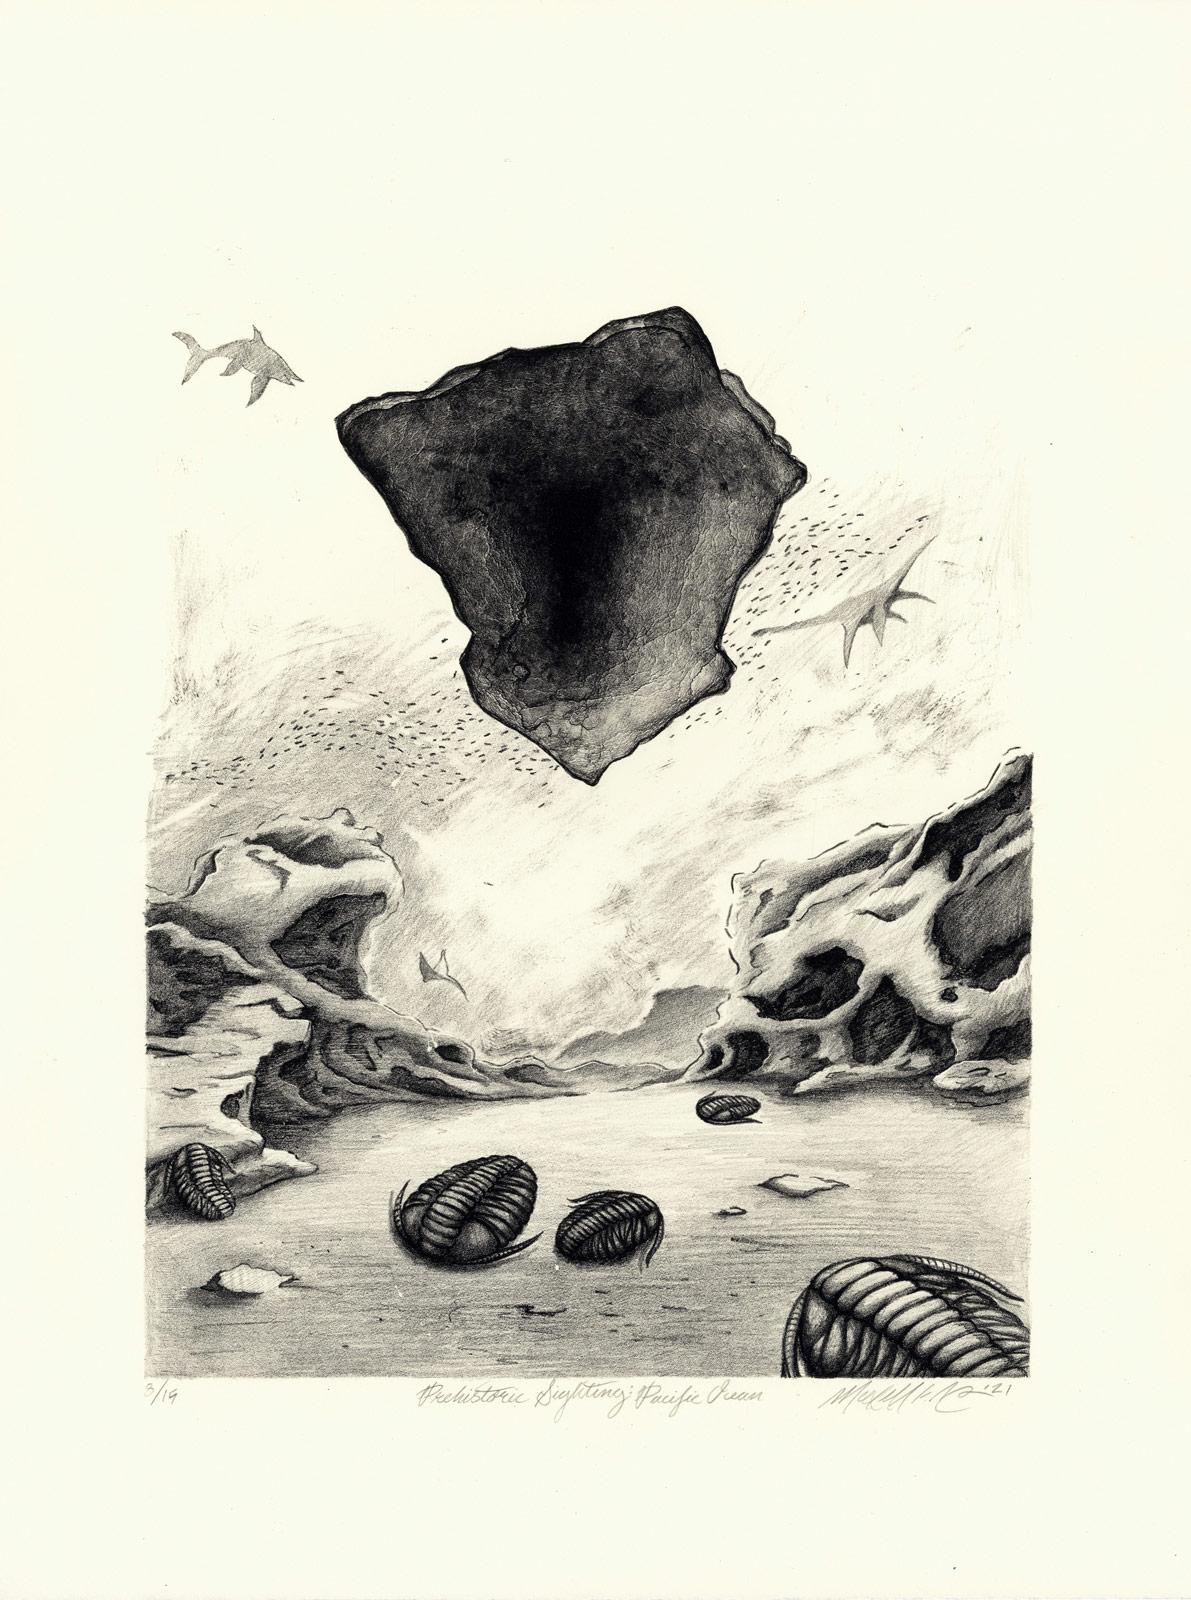 Prähistorische Sichtung im Pazifischen Ozean (Goblin Haie?) – Print von Maxwell Roath